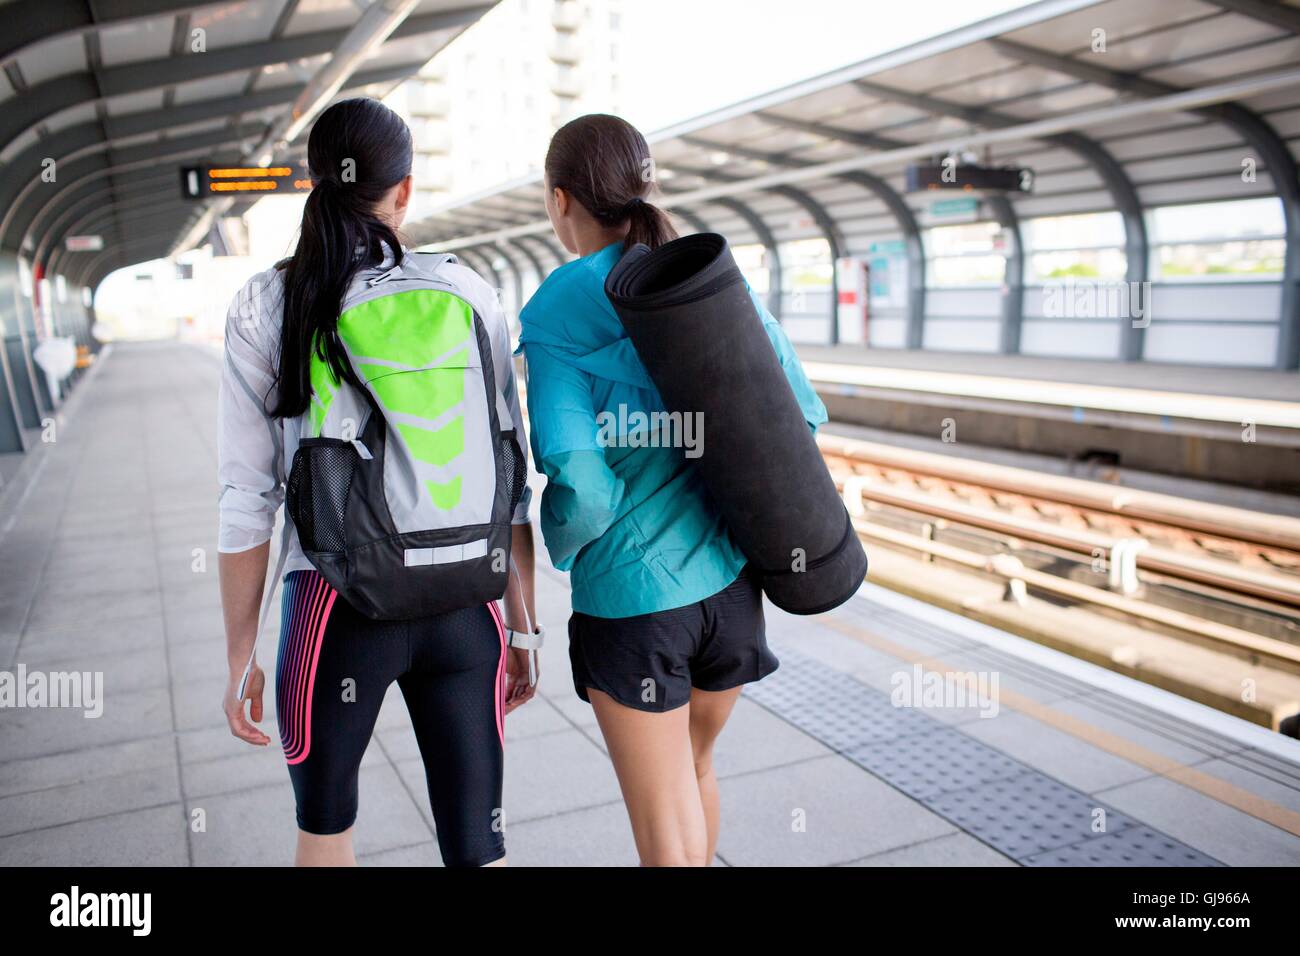 -MODELL VERÖFFENTLICHT. Zwei junge Frauen mit Sportgeräten auf Bahnsteig. Stockfoto